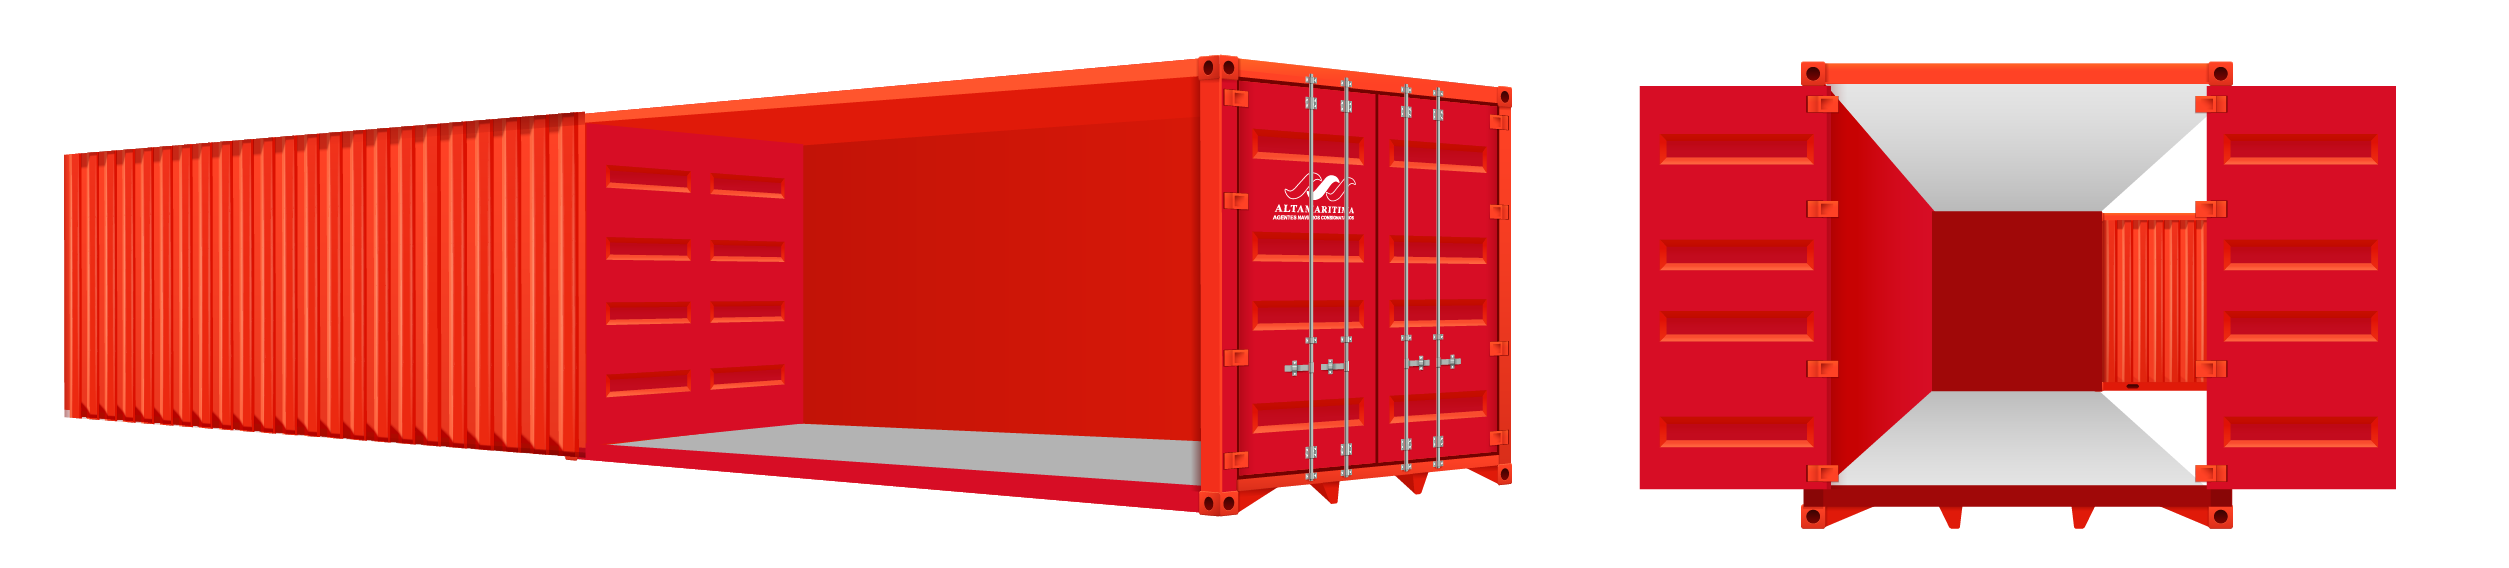 Tipos de contenedores (usos y dimensiones) – Altamaritima